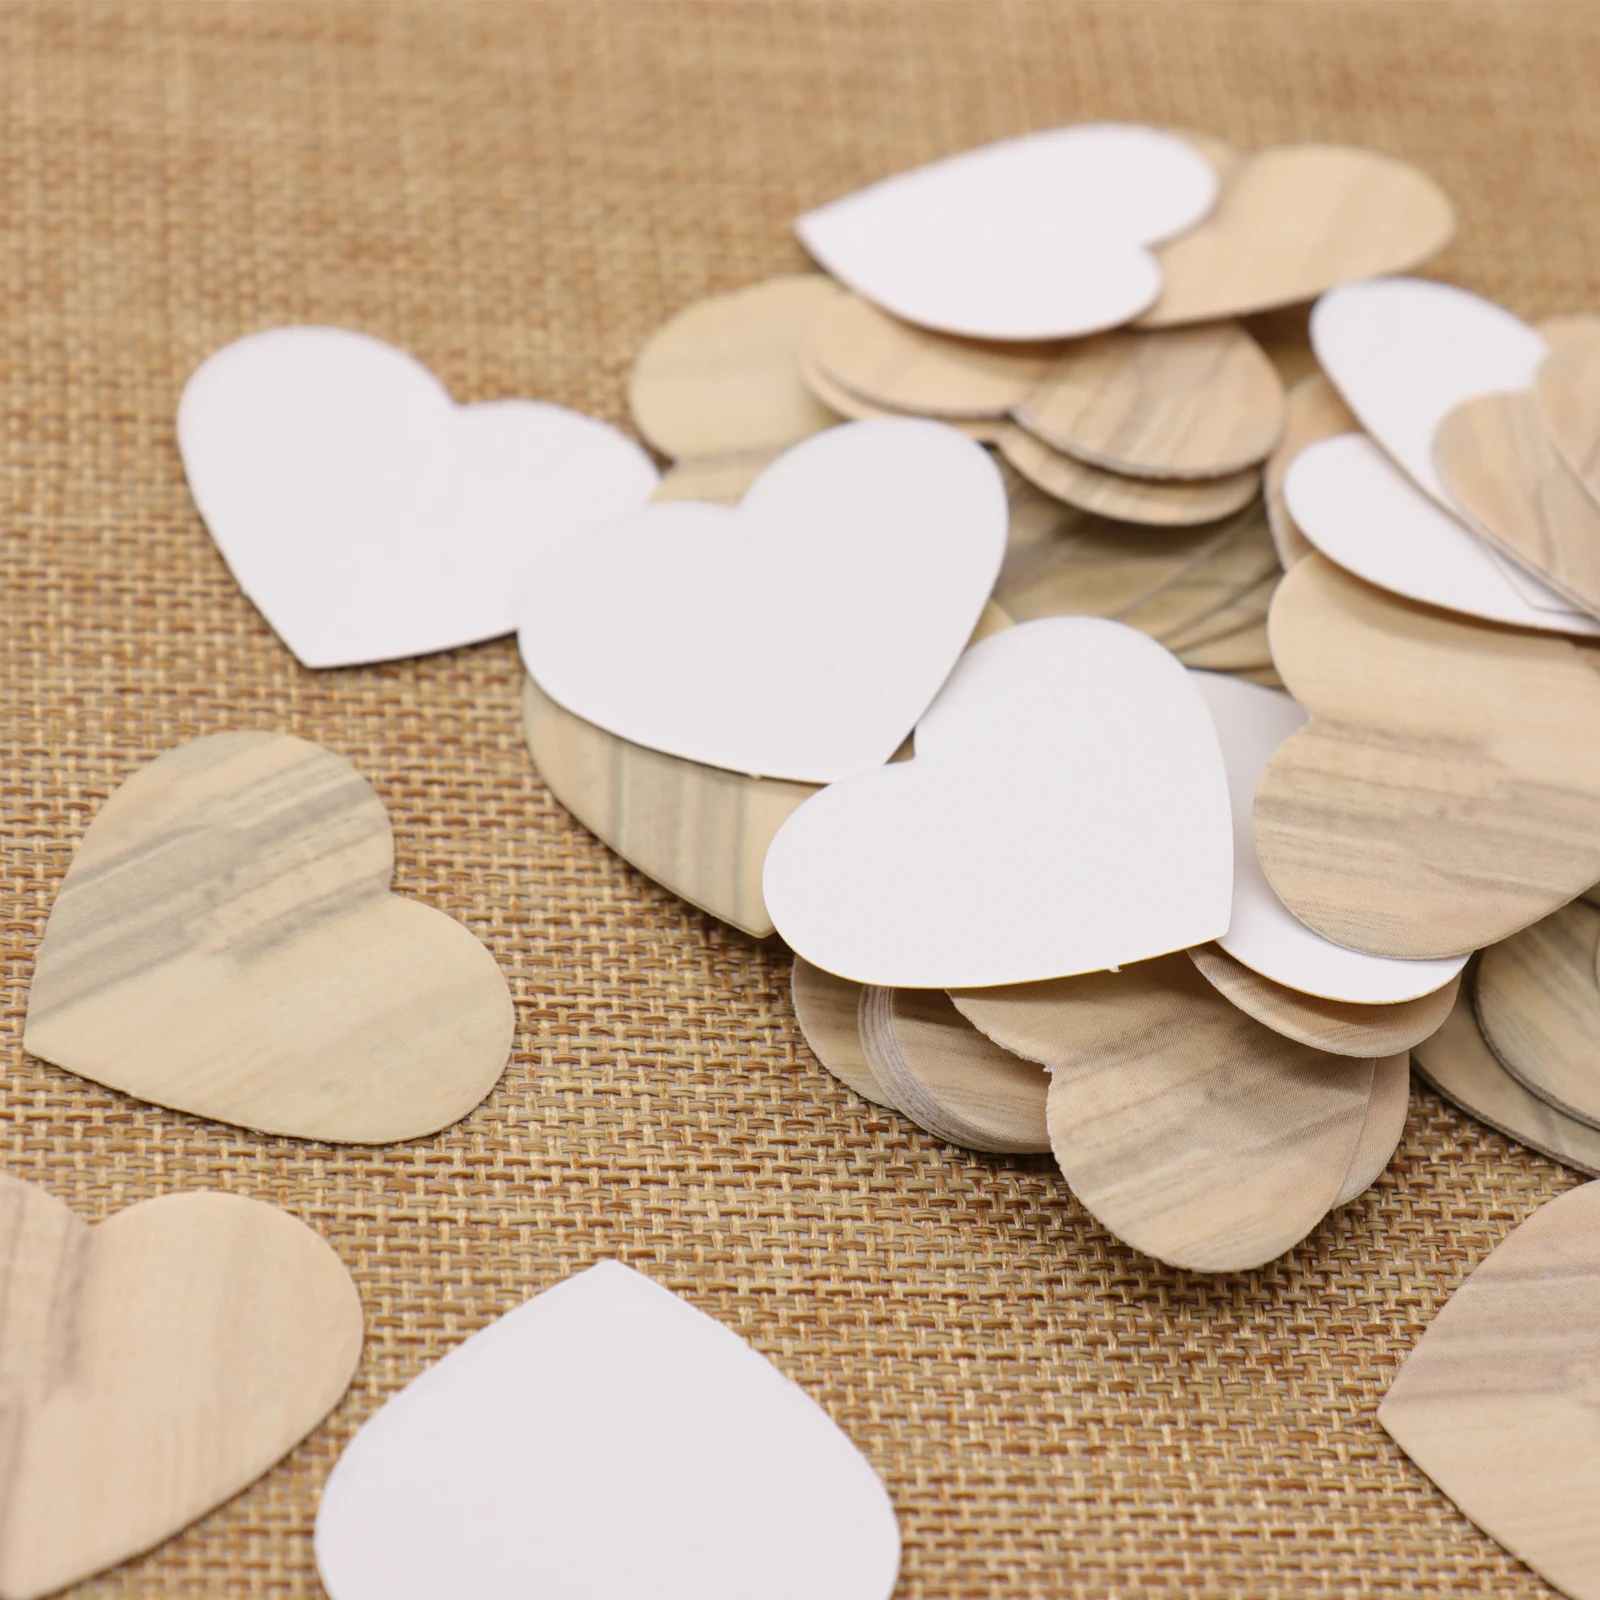 50 adet / takım Kalp Şeklinde Kağıt Ahşap Renkli Kağıt Konfeti Düğün Parti Etiket Fiyat Hediye Kartları Dekorasyon Tatil Parti Malzemeleri